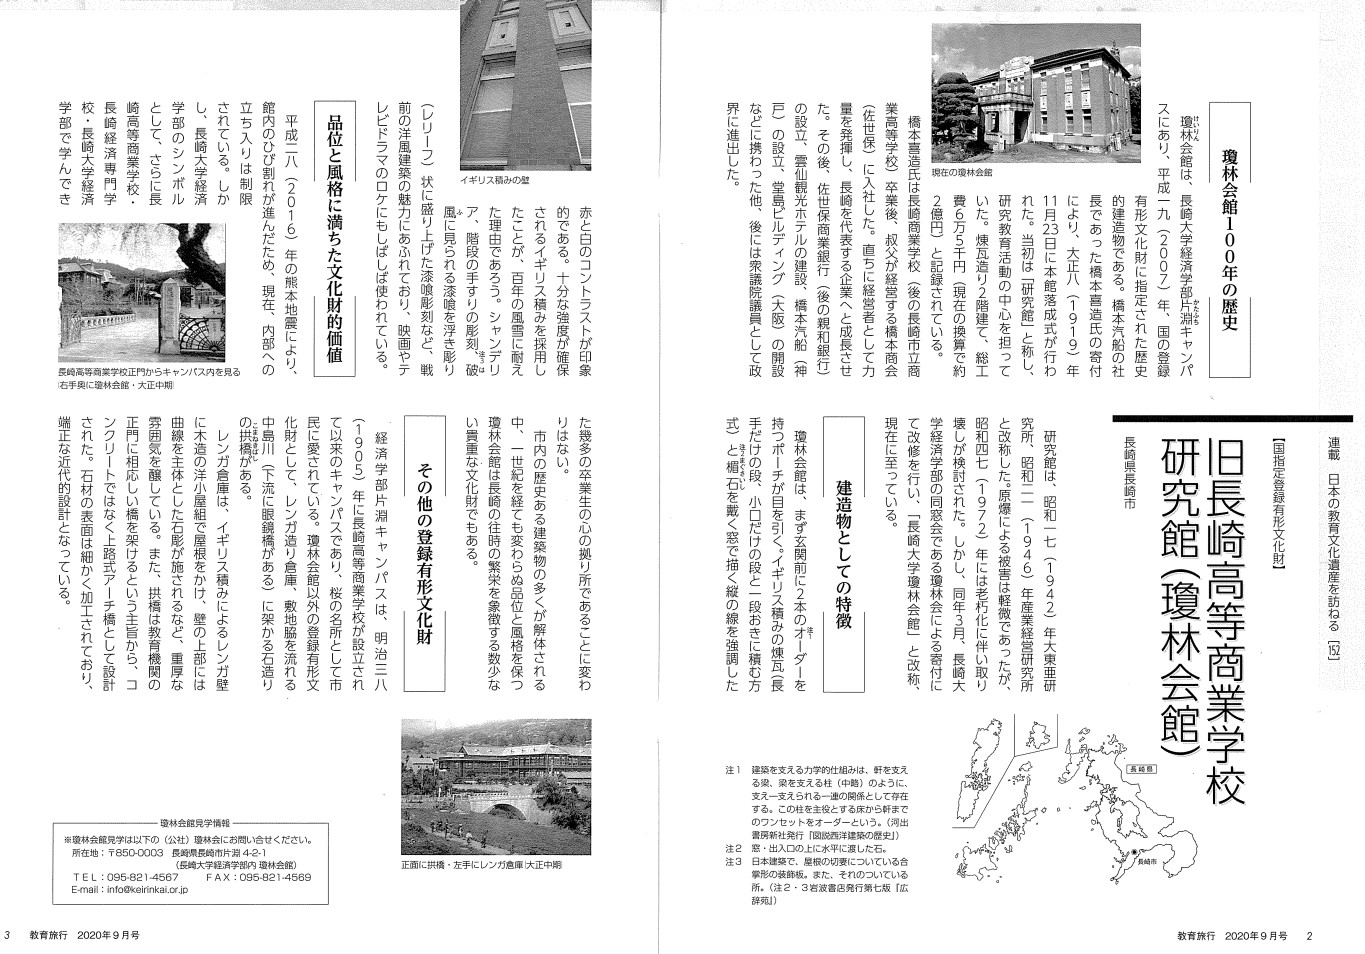 巻頭記事「日本の教育文化遺産を訪ねる」